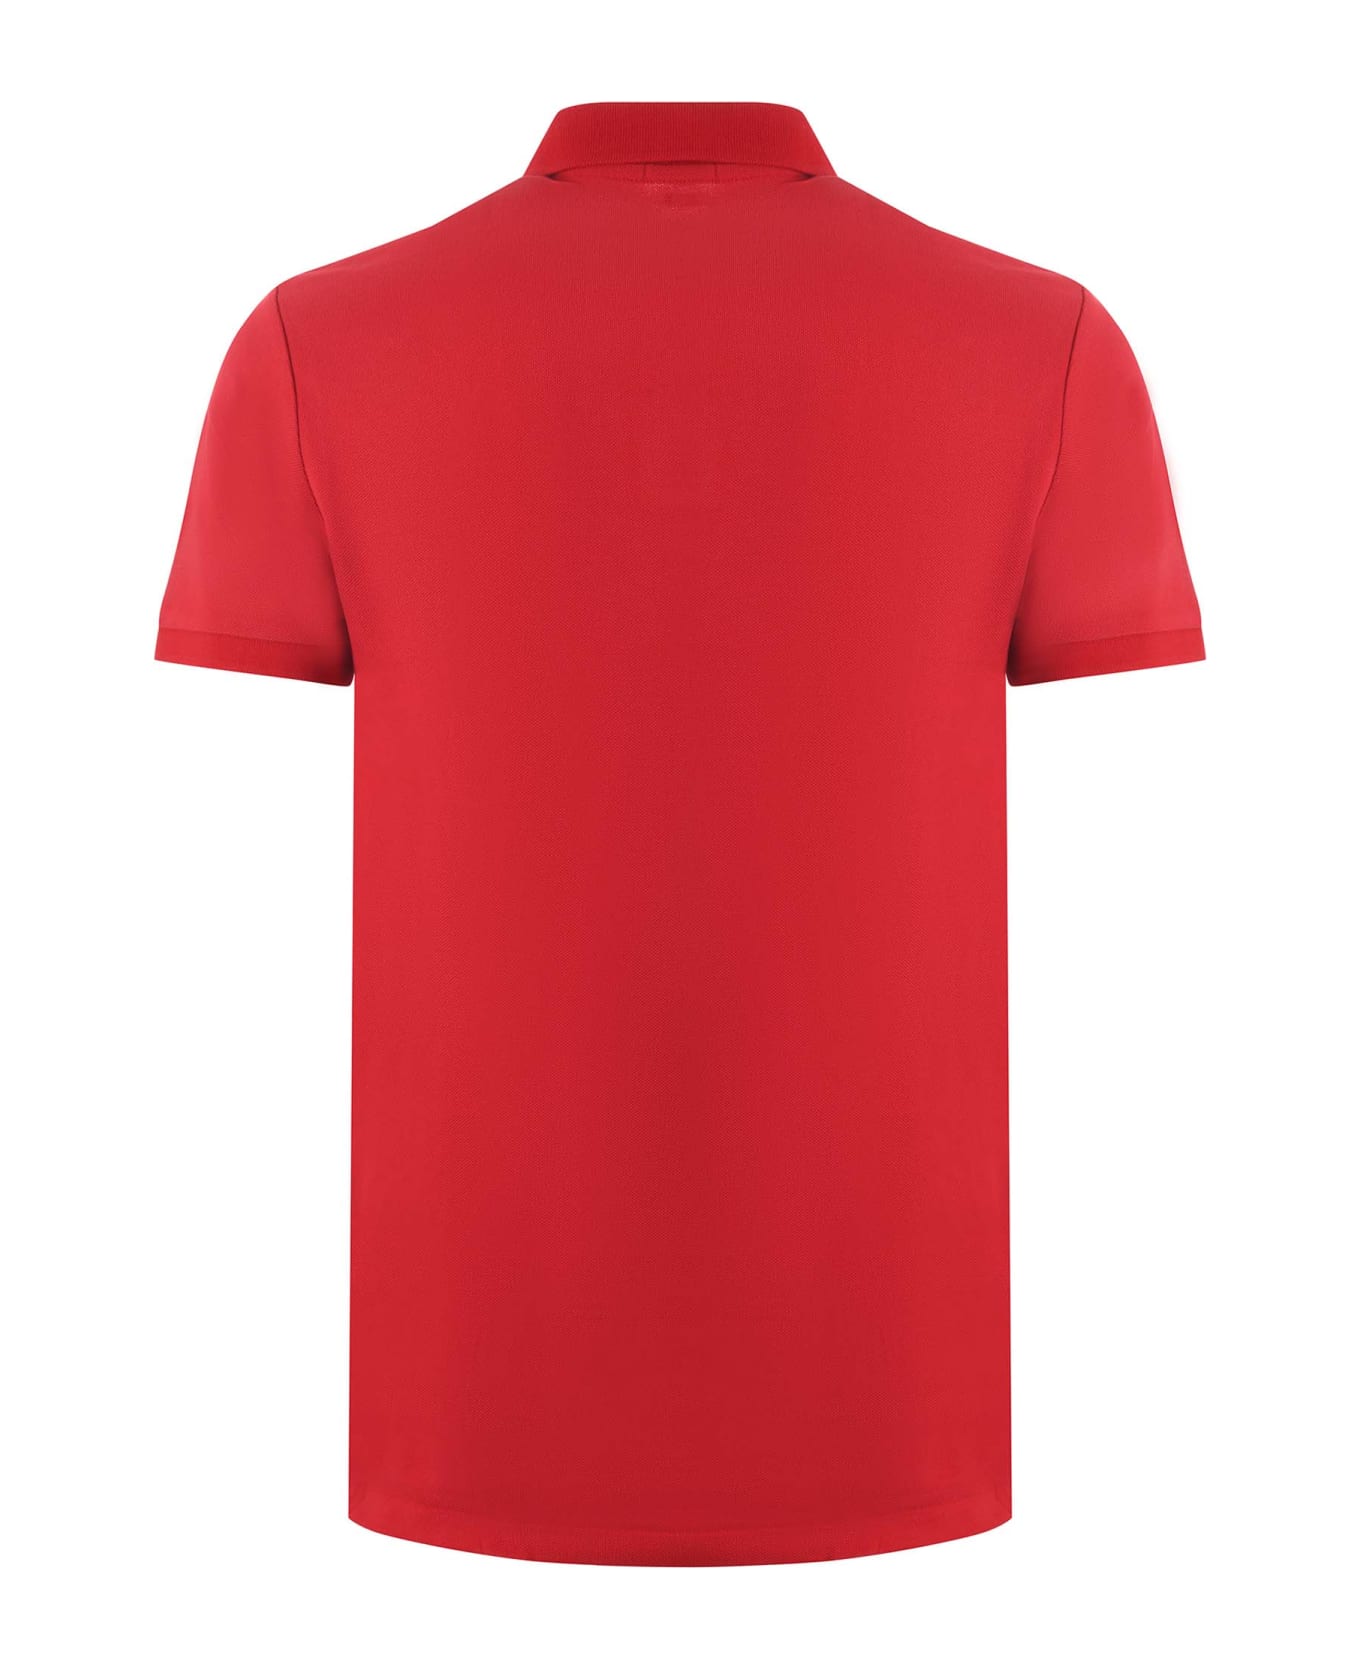 Polo Ralph Lauren "polo Ralph Lauren" Polo Shirt - Rosso ポロシャツ